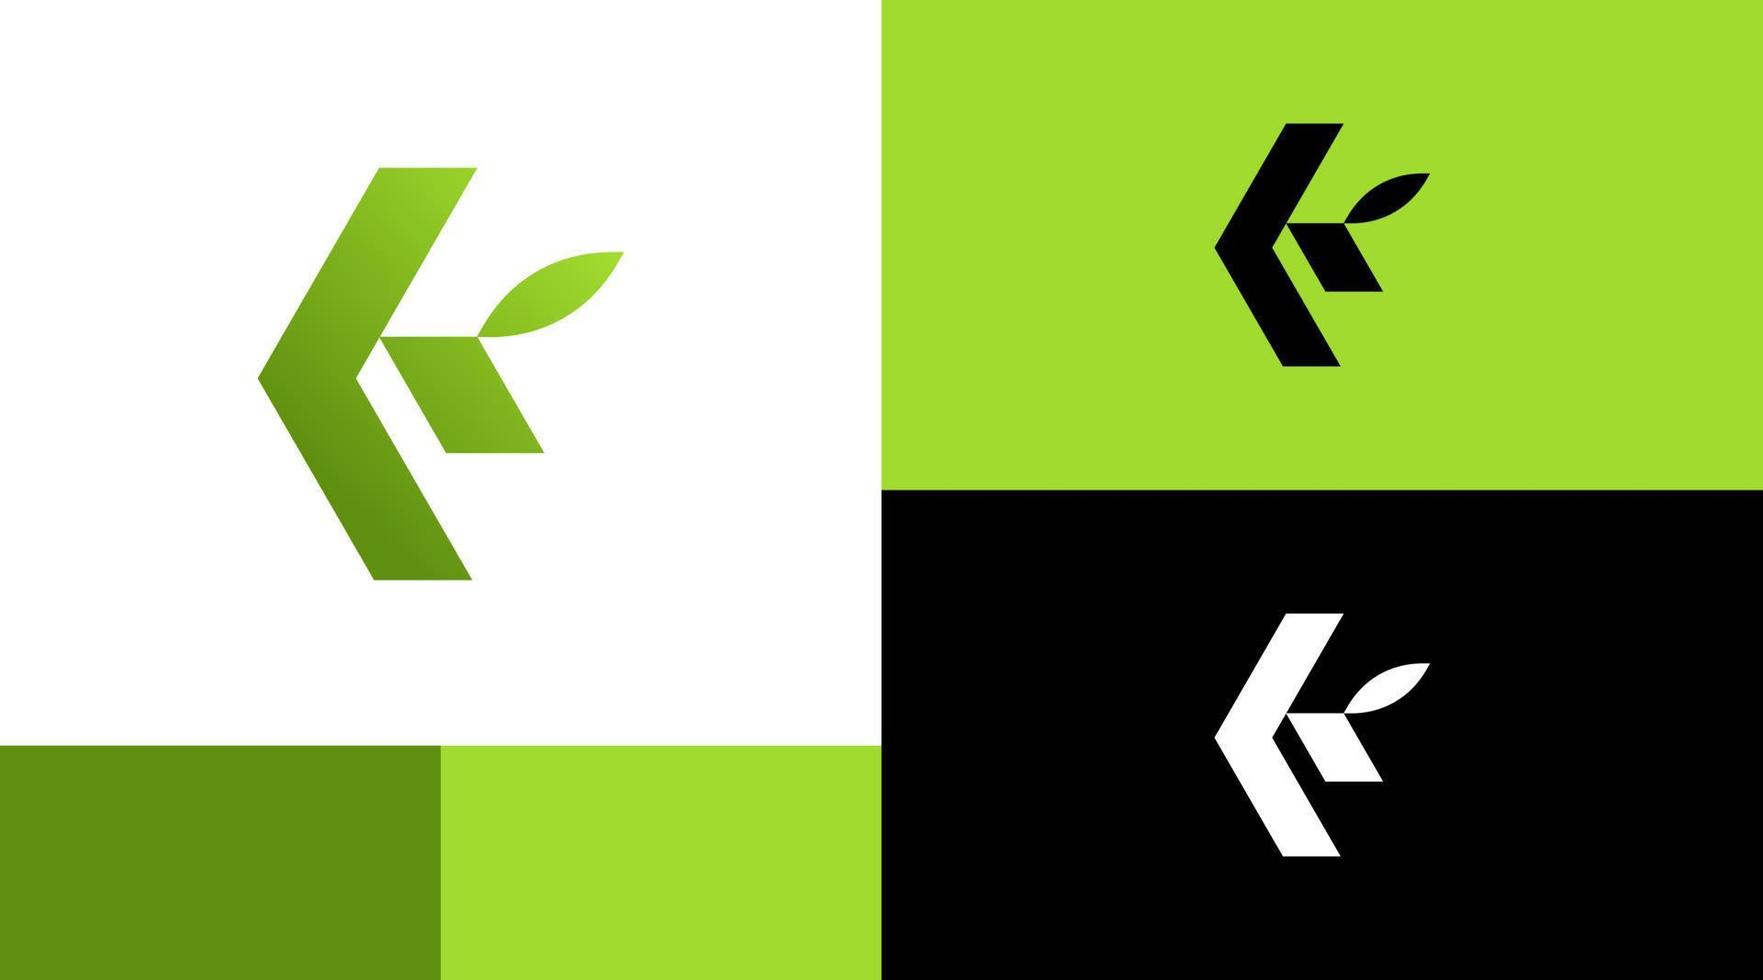 Natural Leaf K Monogram Logo Design Concept vector